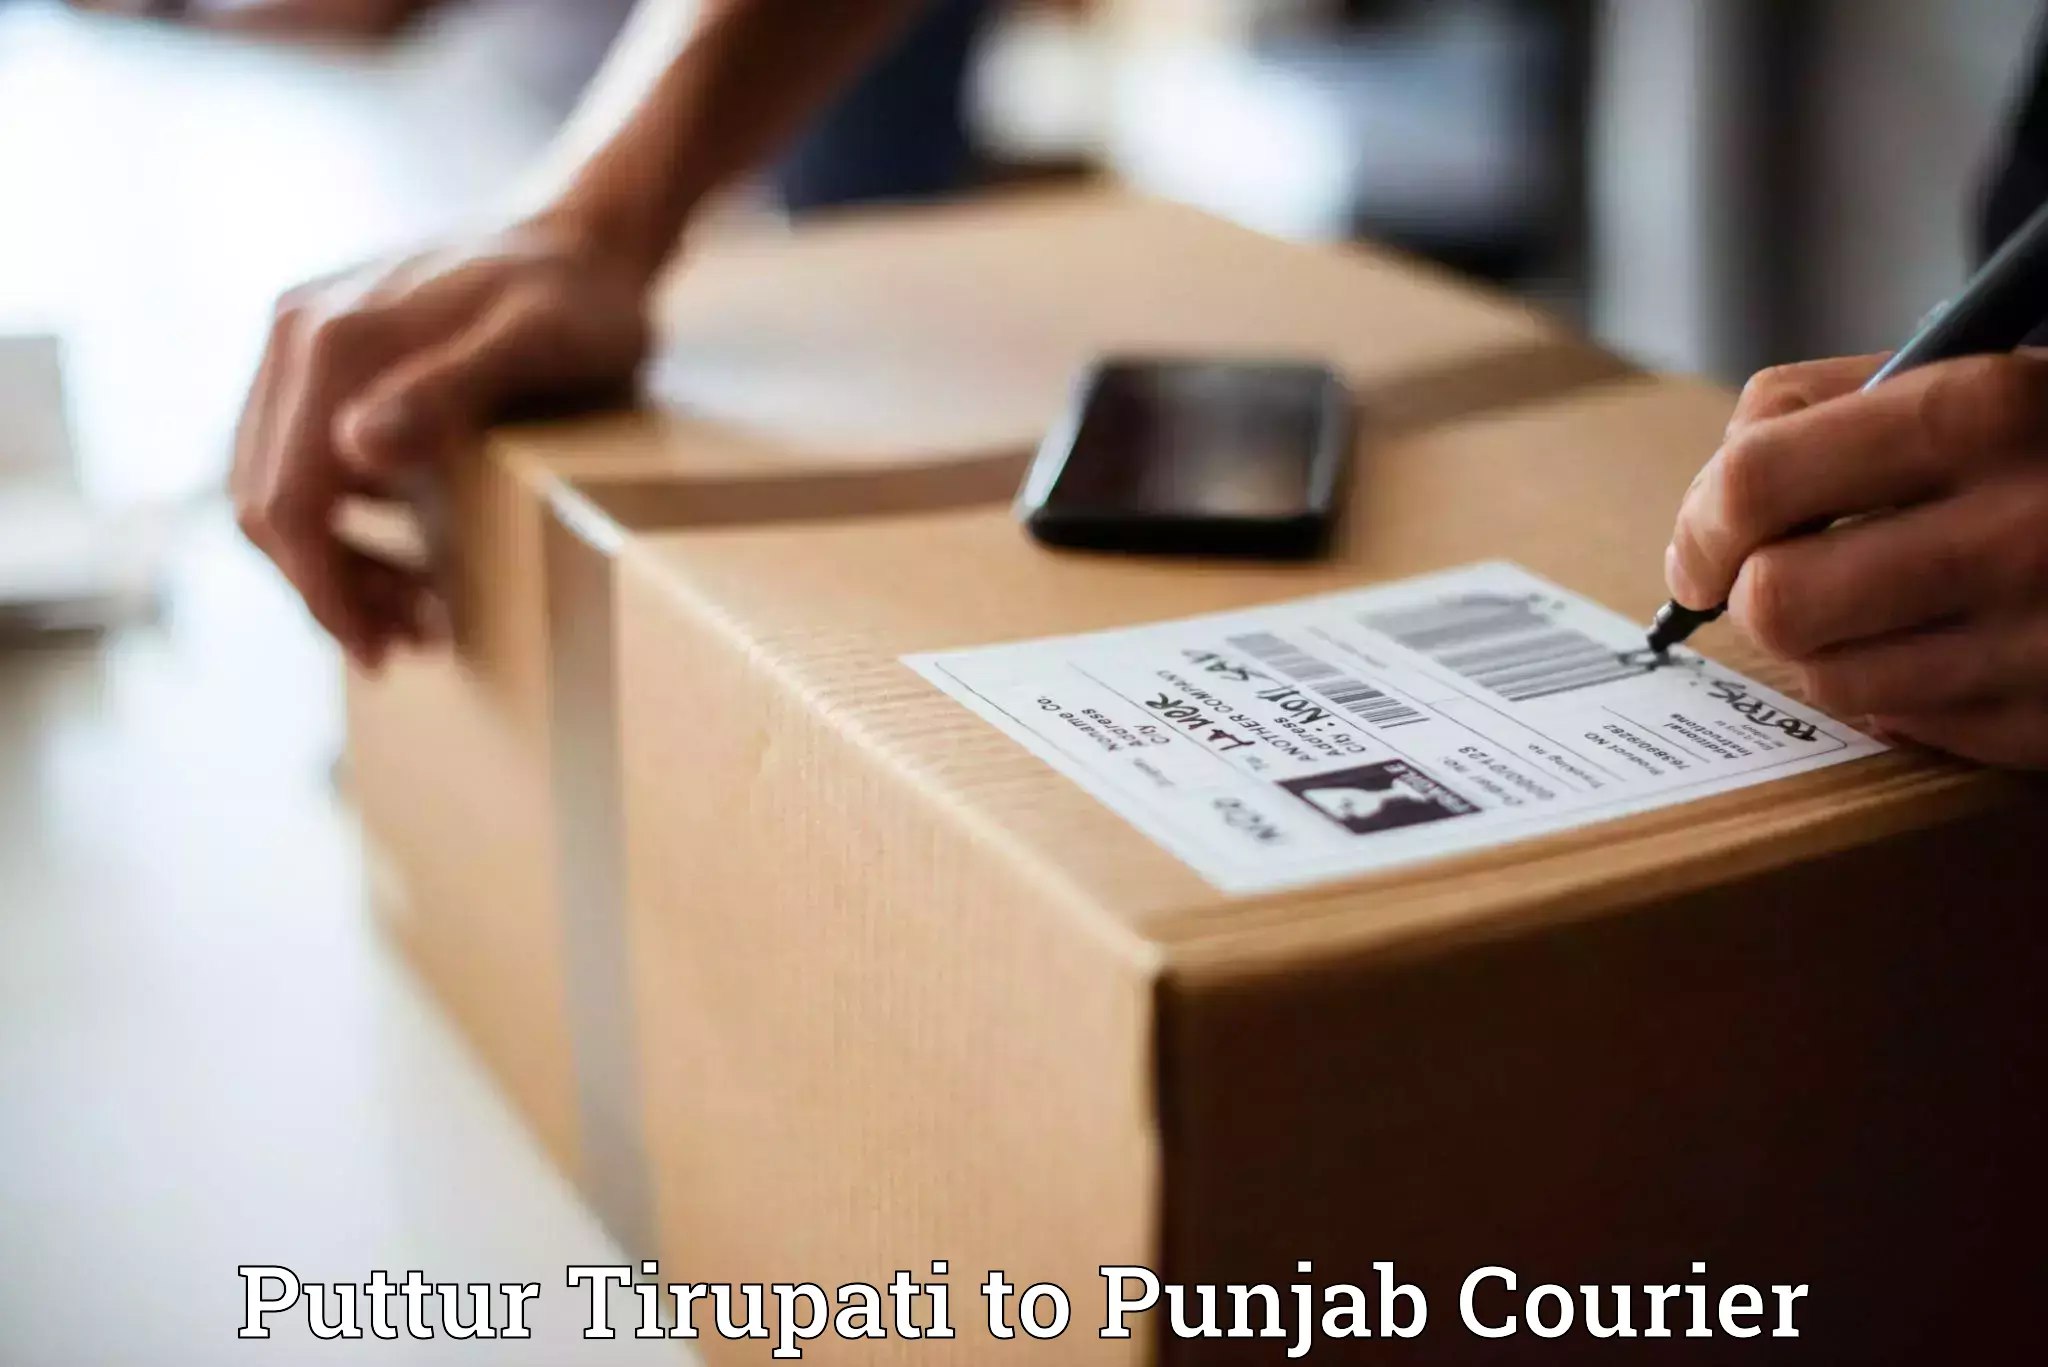 Global courier networks Puttur Tirupati to Ropar